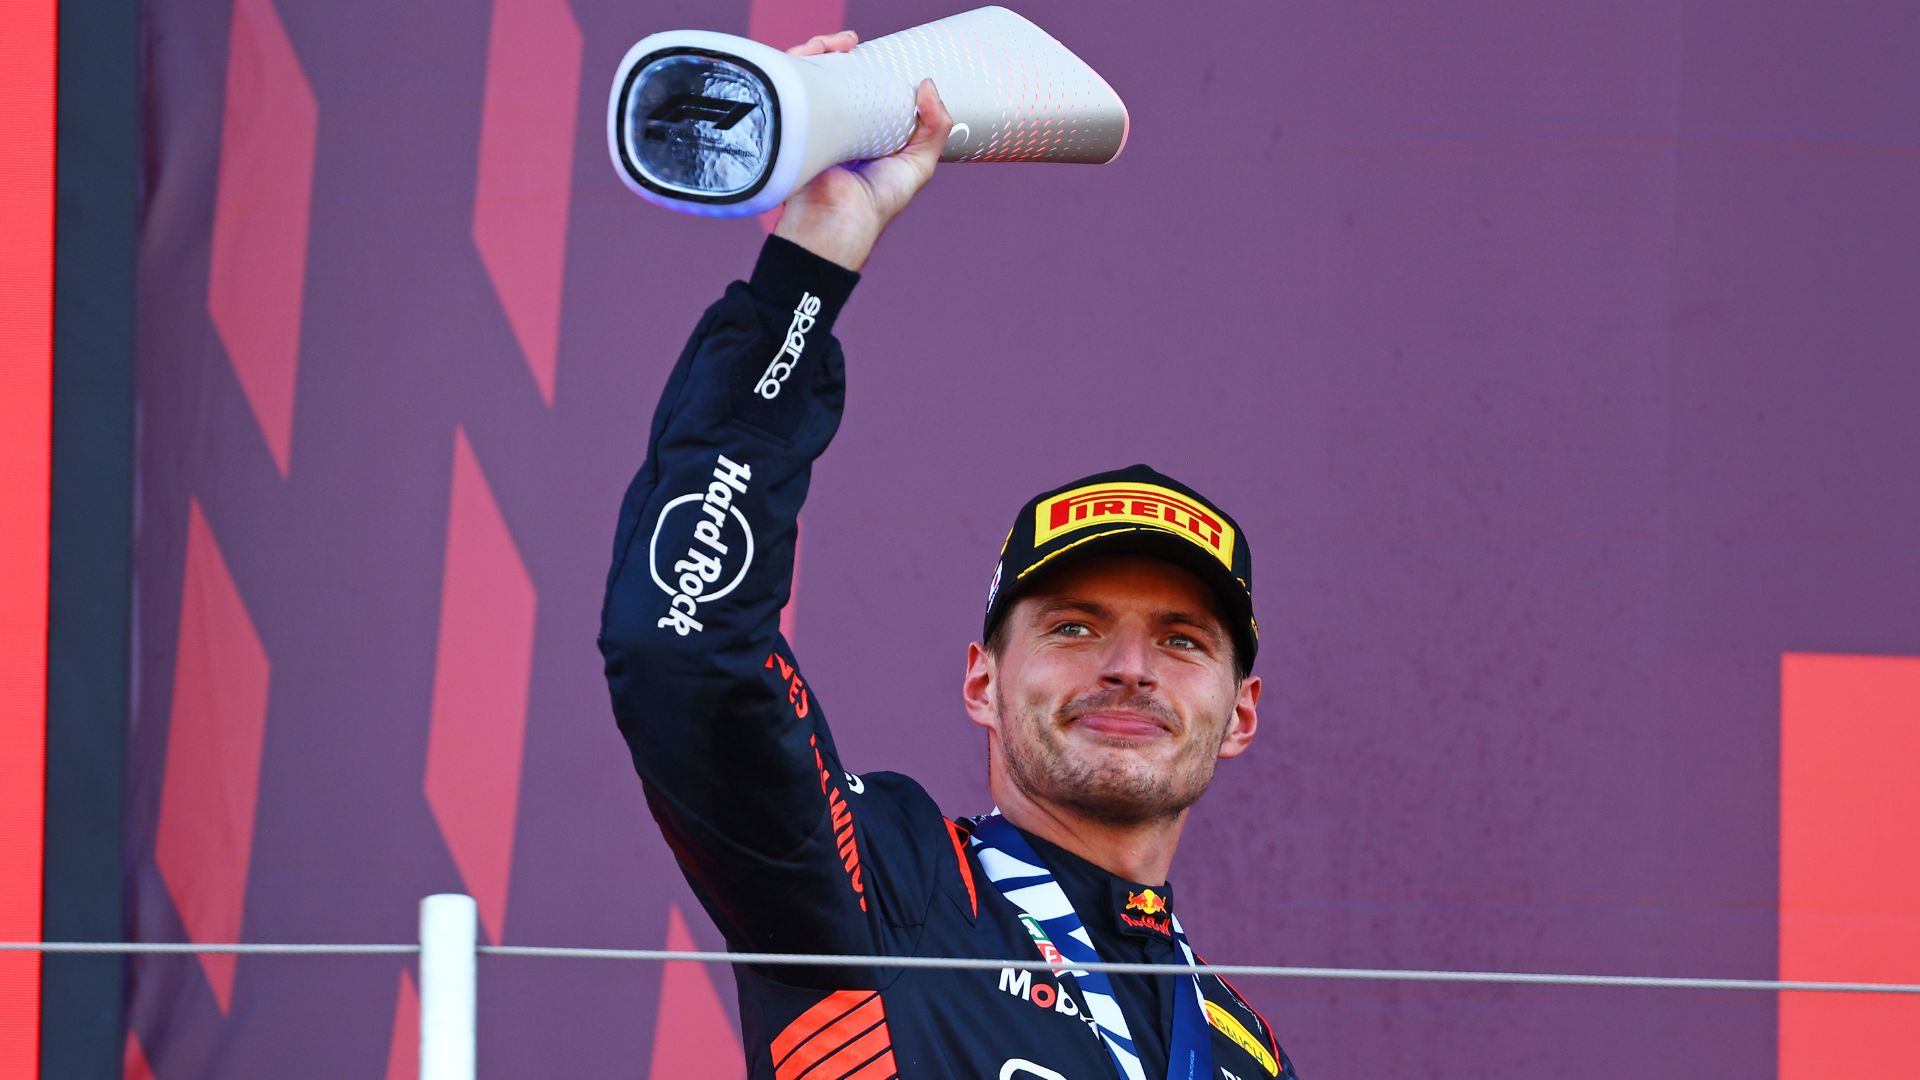 GazetaWeb - GP do Japão: Verstappen lidera 2º treino e Gasly bate no fim